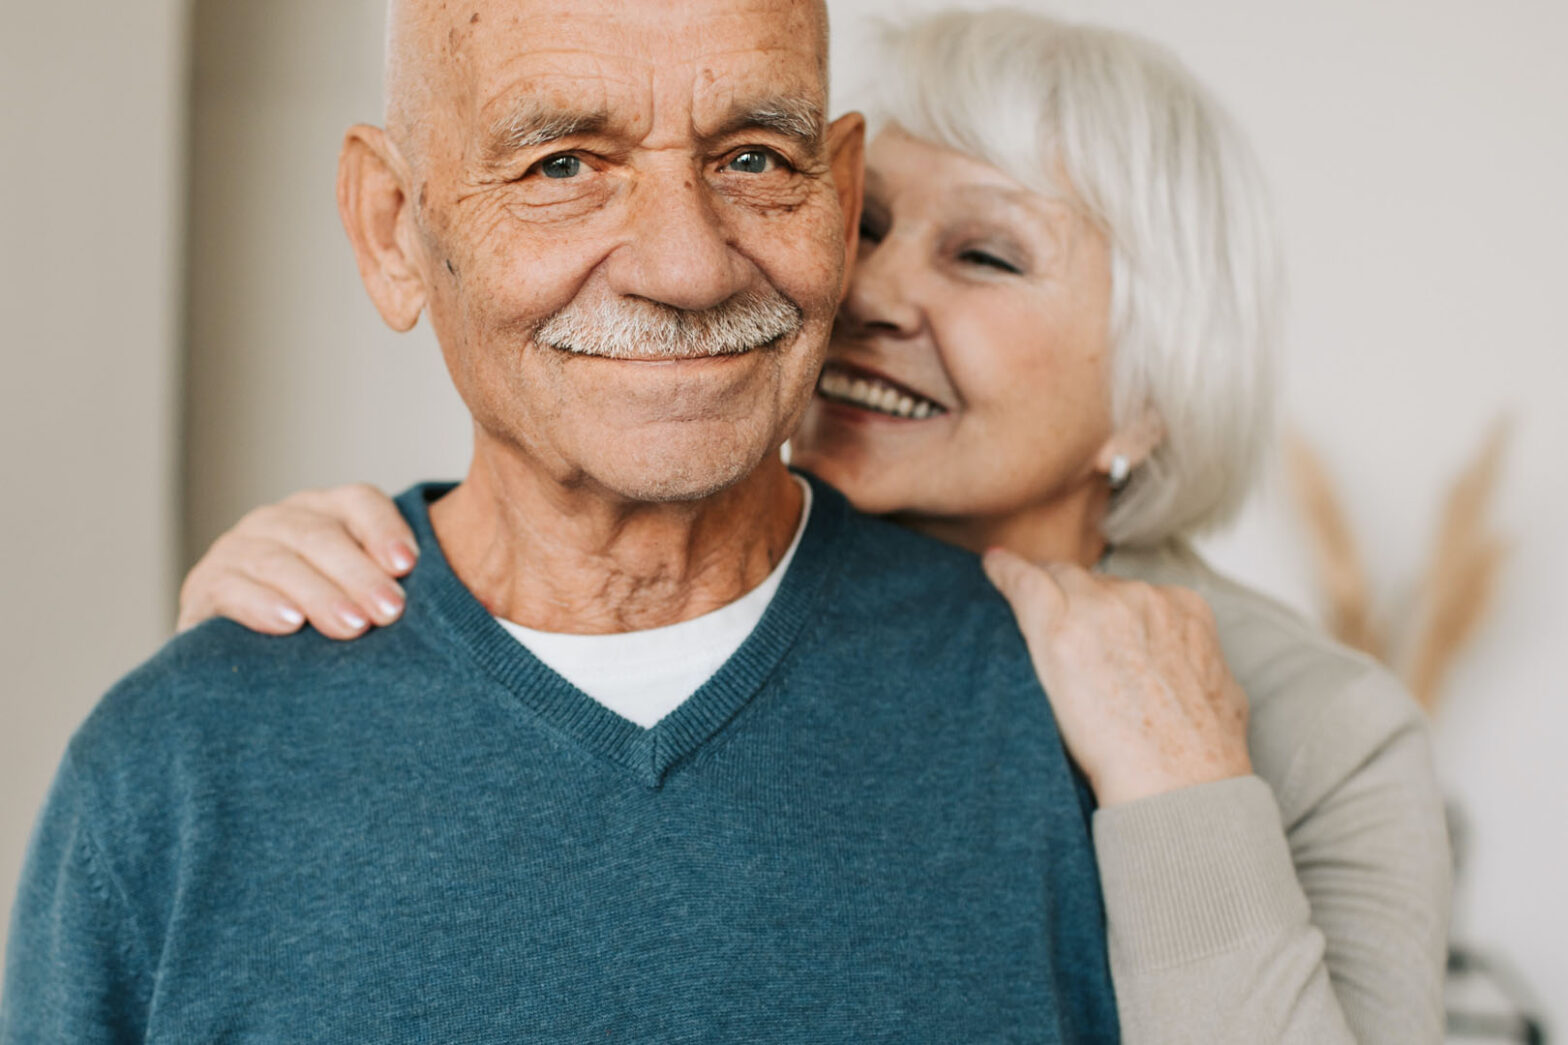 cecile aguesse univers de la vieillesse gerontopsychologie blog secrets longevite couples